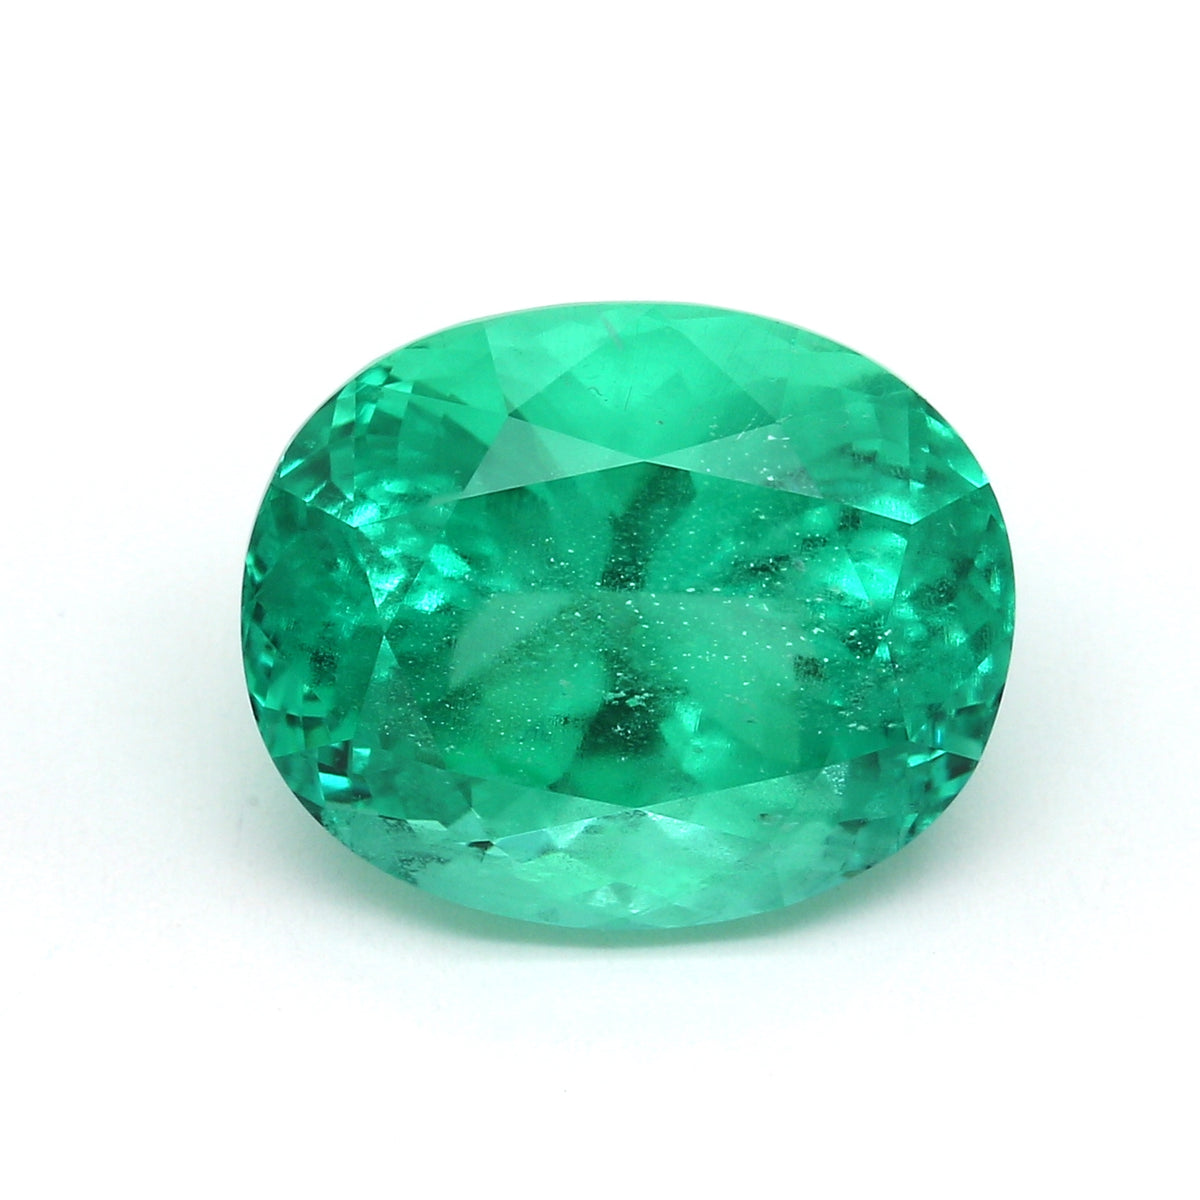 GM Midnight (Green) Emerald 54U, 6M1